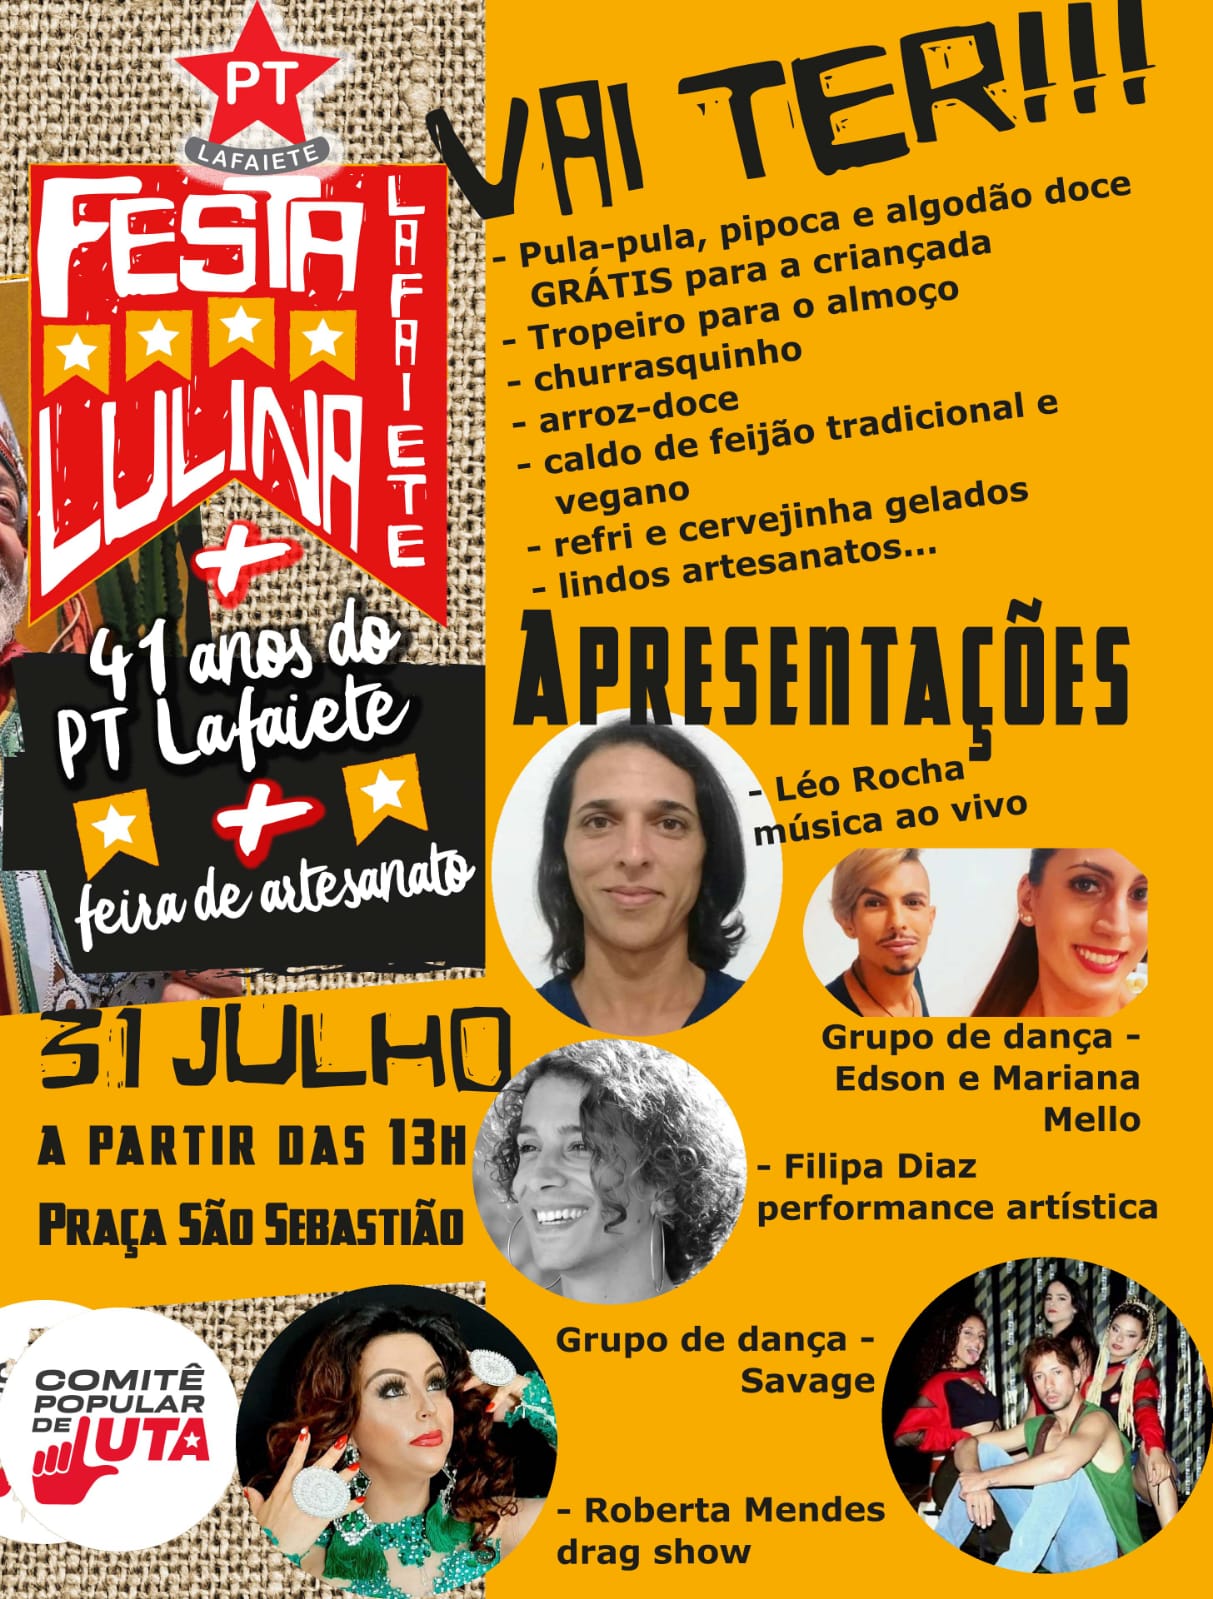 PT Lafaiete comemora aniversário com “Festa Lulina”